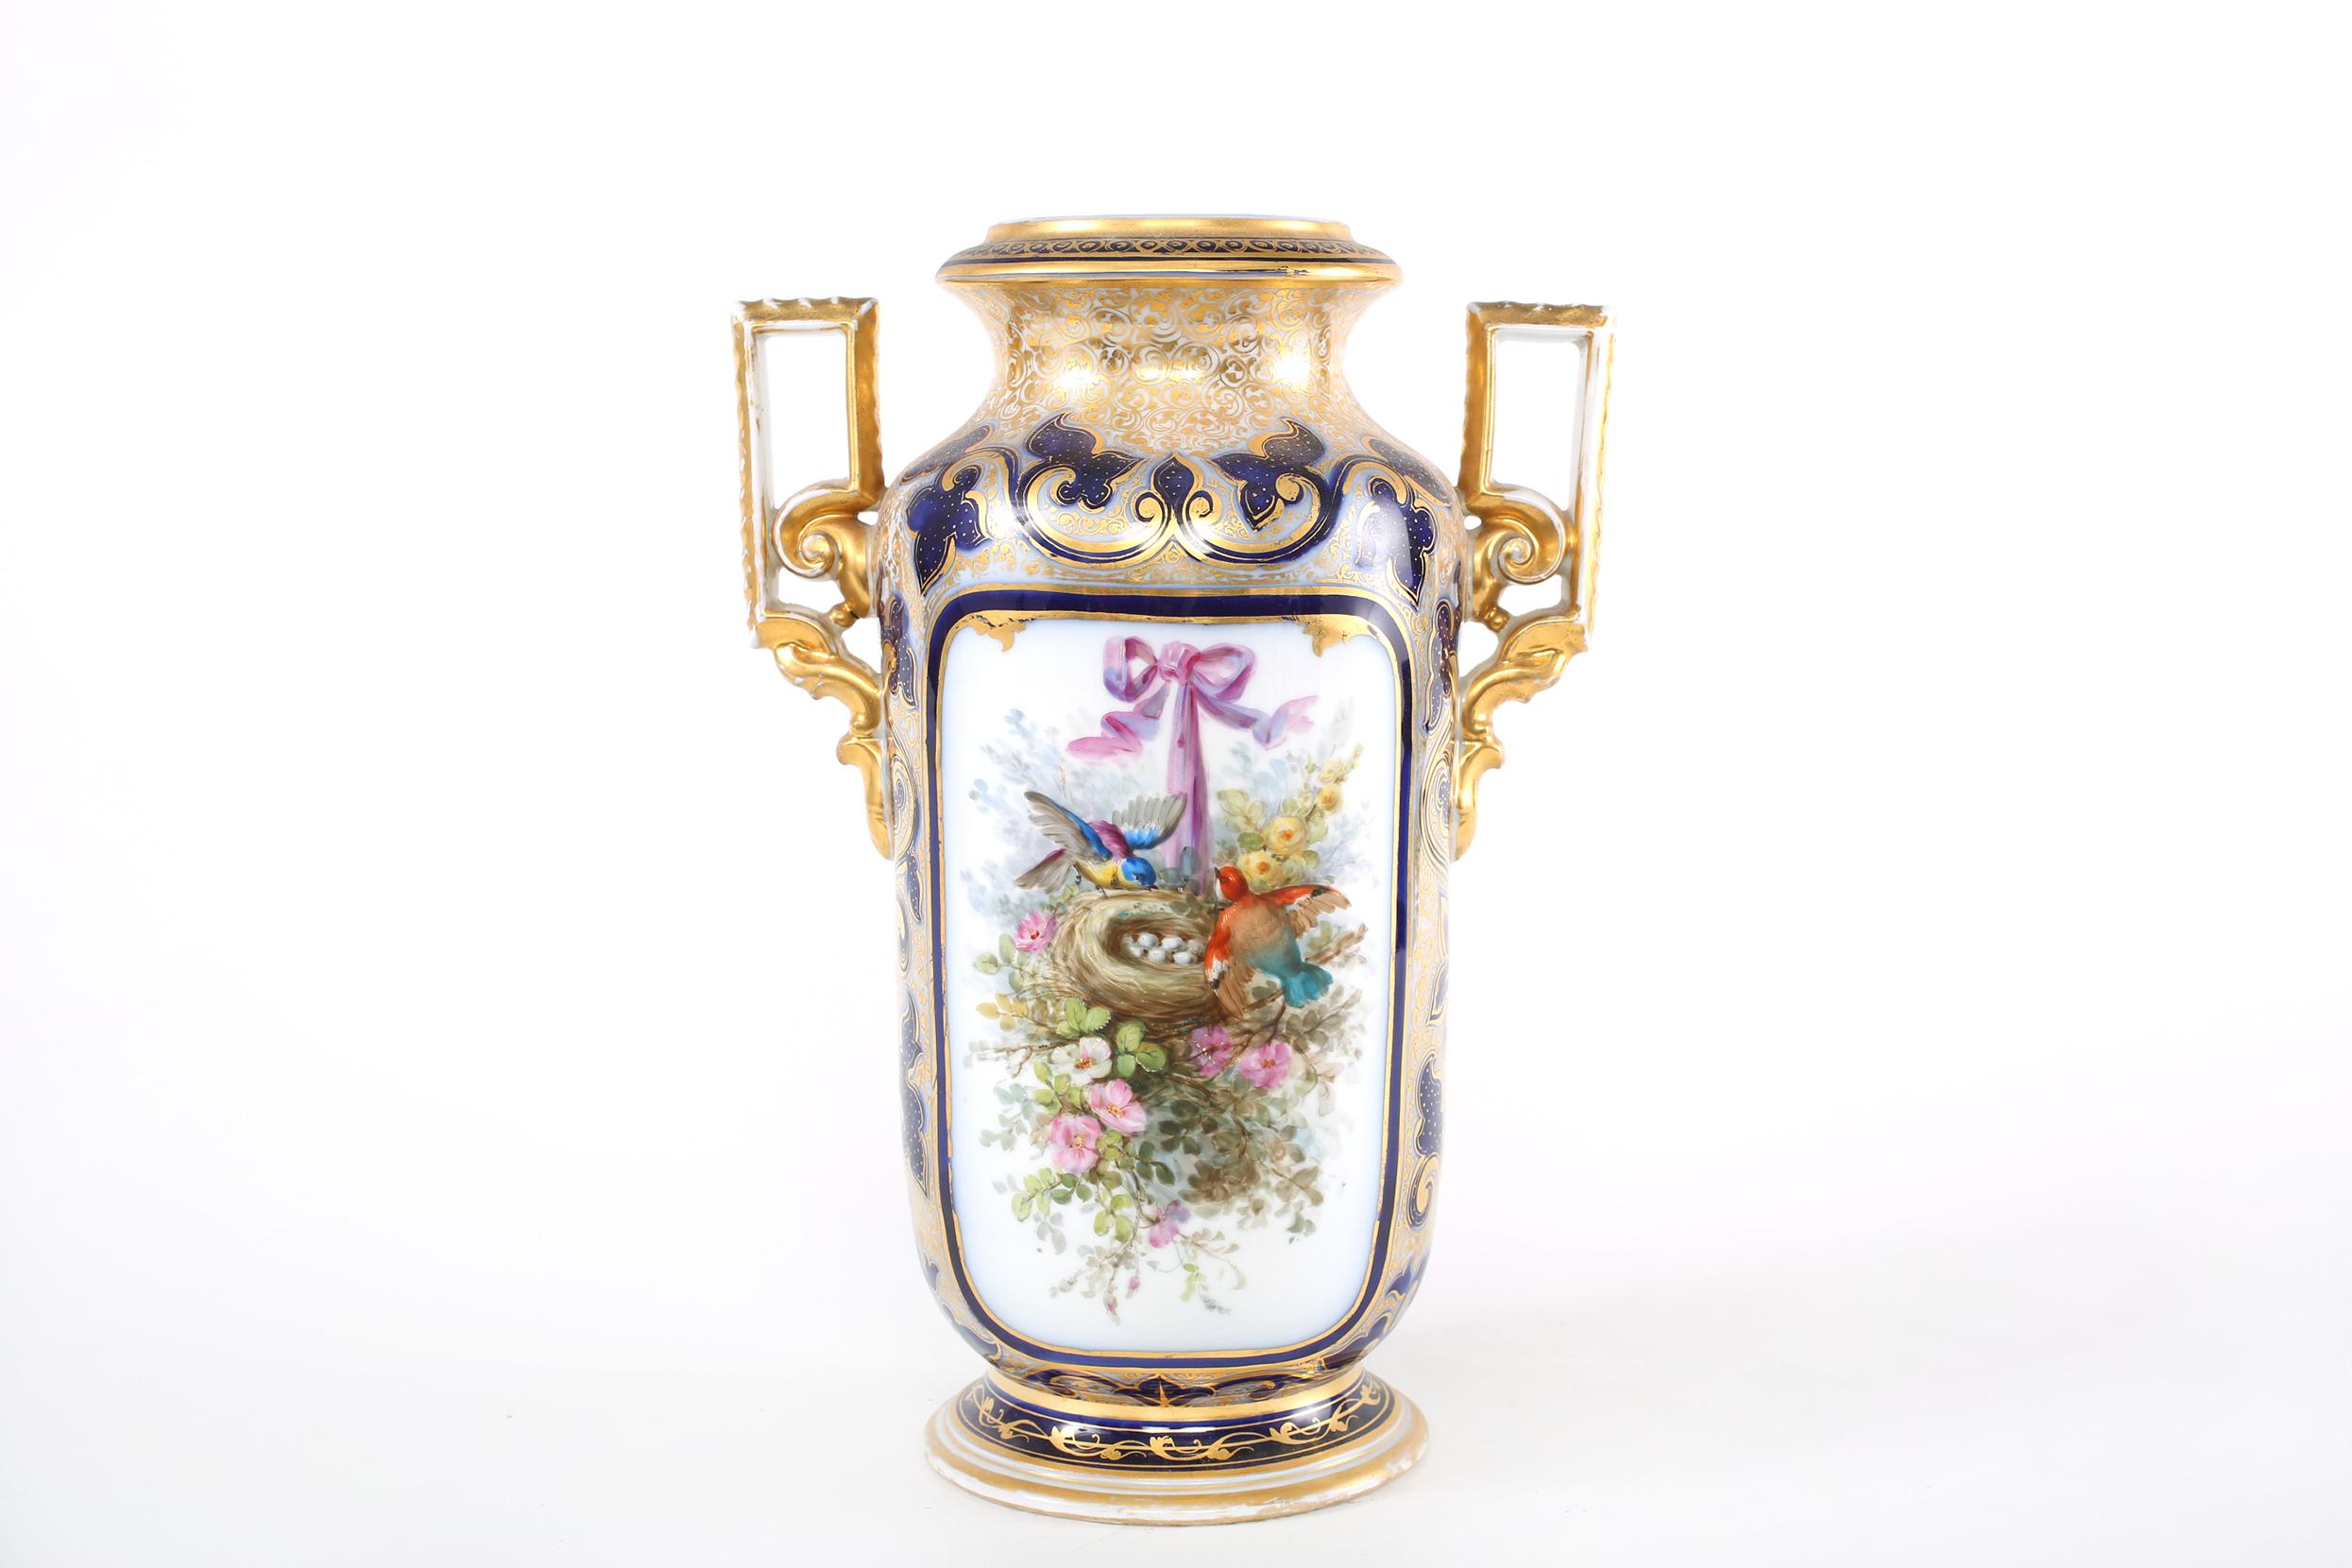 Vase / pièce décorative en porcelaine française du milieu du 19e siècle avec détails extérieurs de la scène peints en or doré et poignées latérales. Le vase / pièce est en bon état avec une usure appropriée conforme à l'âge / l'utilisation. Le